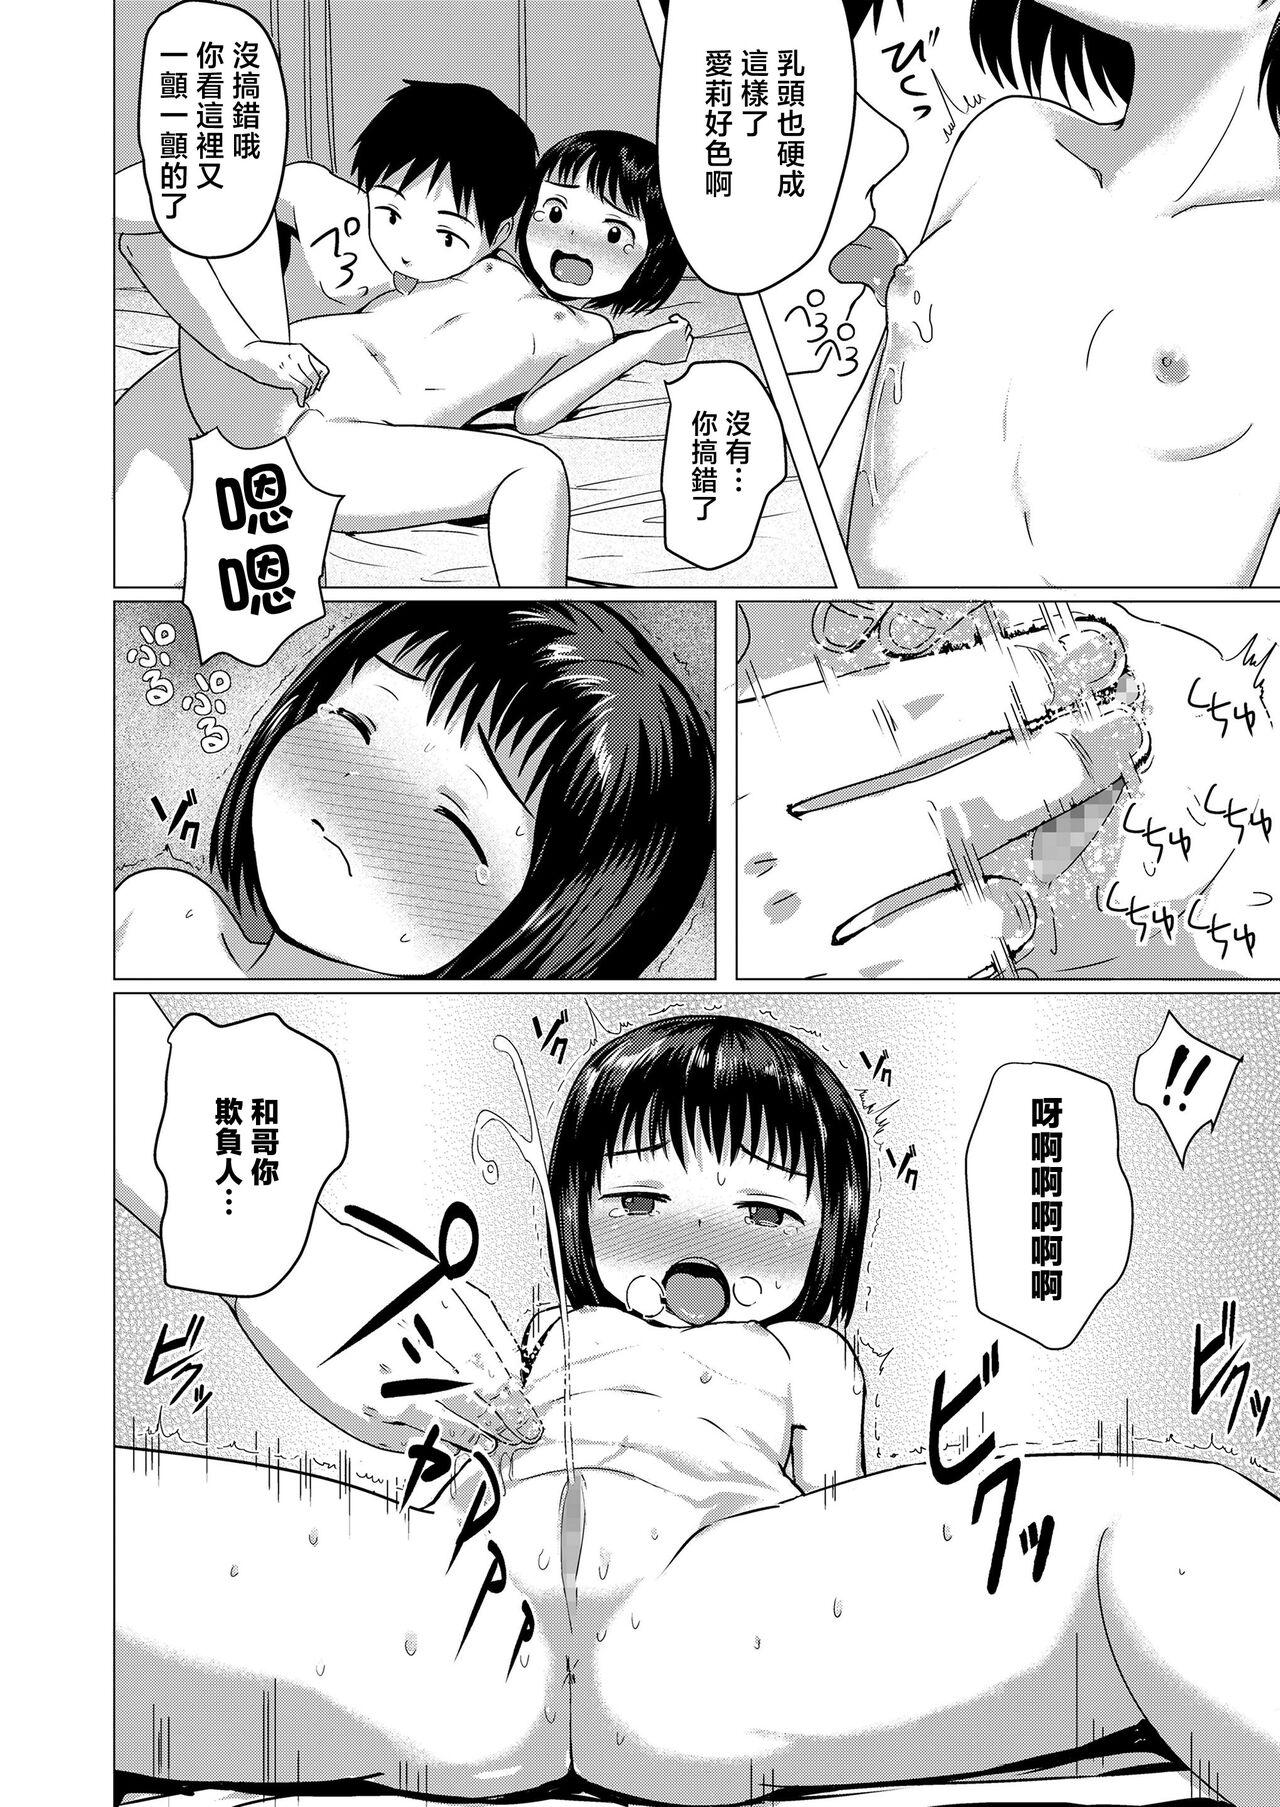 Hardcorend Oyatsu no Jikan Caught - Page 10